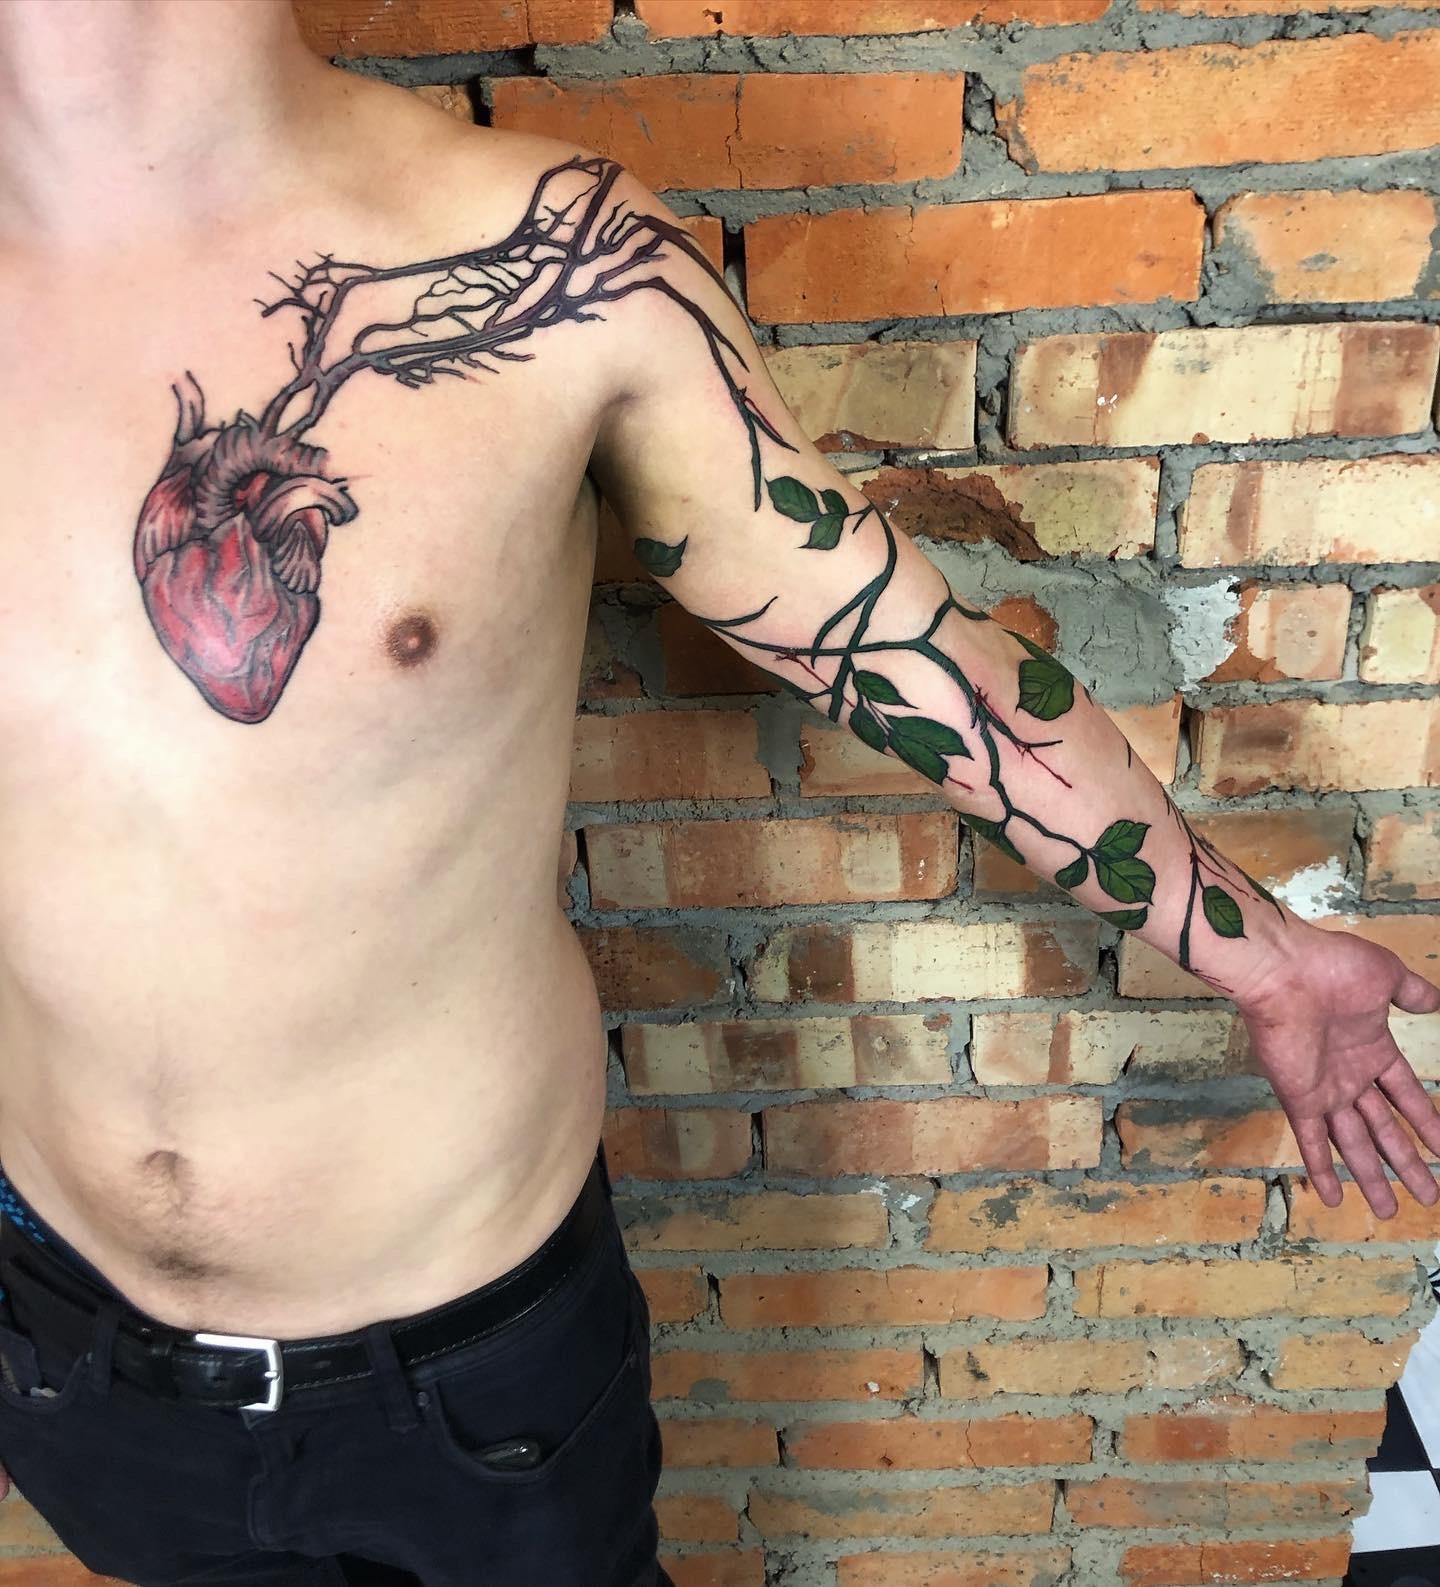 Inksearch tattoo Chamski kontur